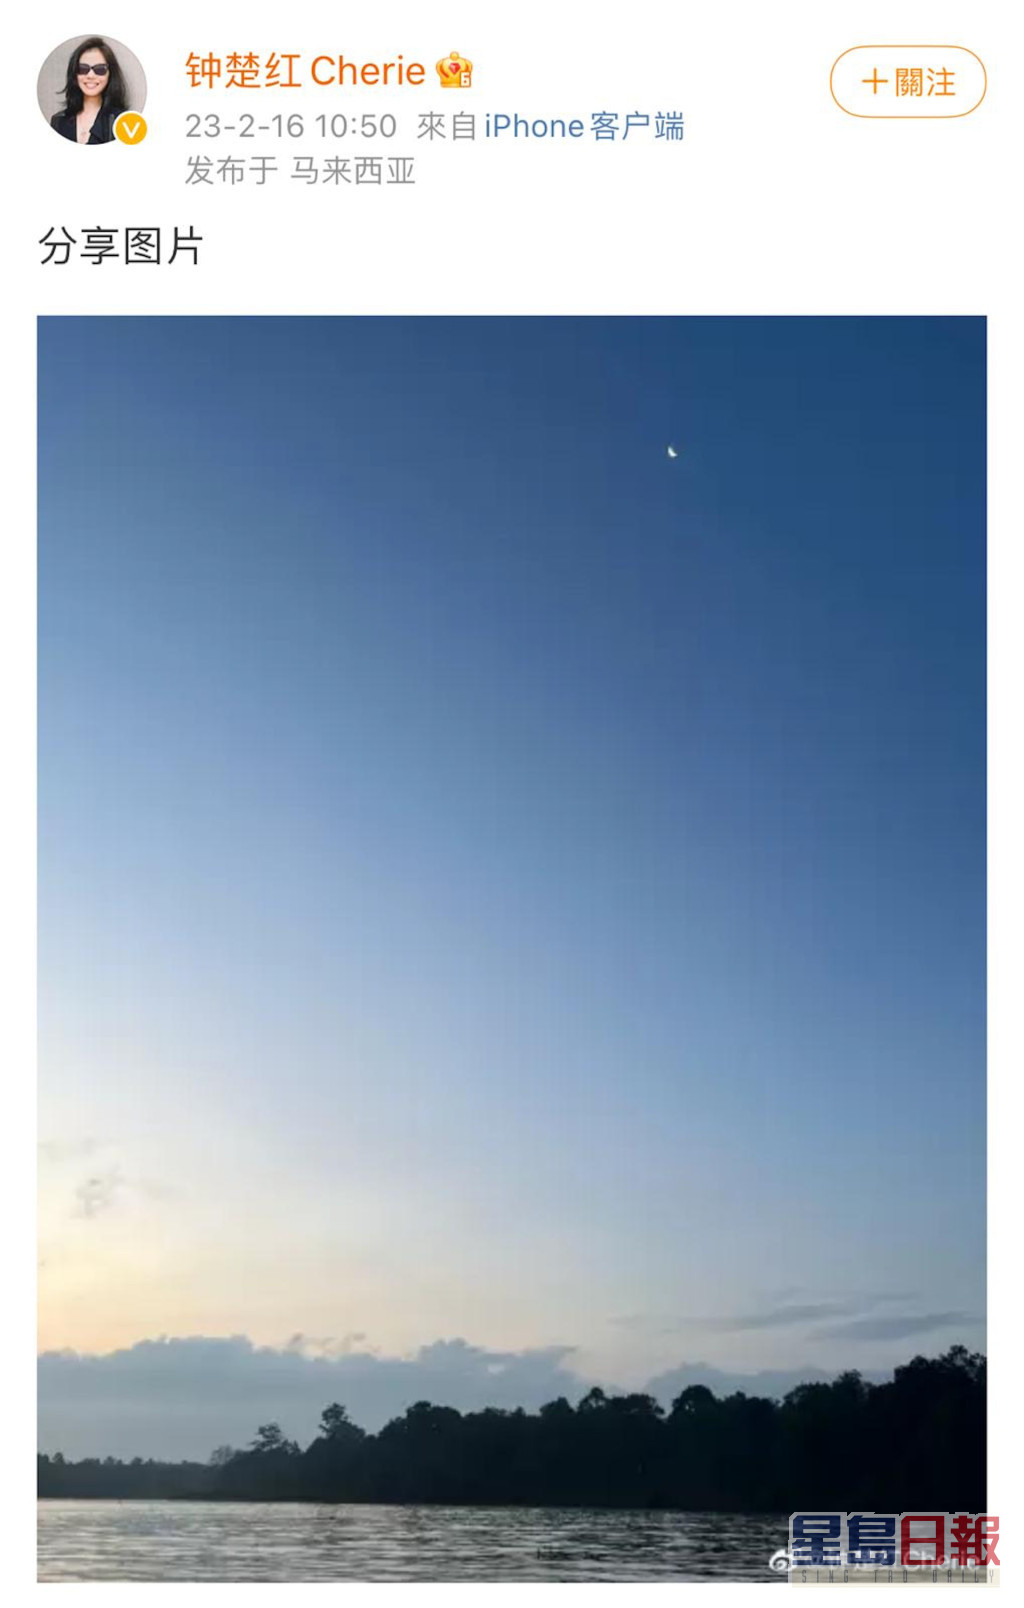 锺楚红于本月16日生日正日晒风景照，打卡地点曝露了她正身处马来西亚。